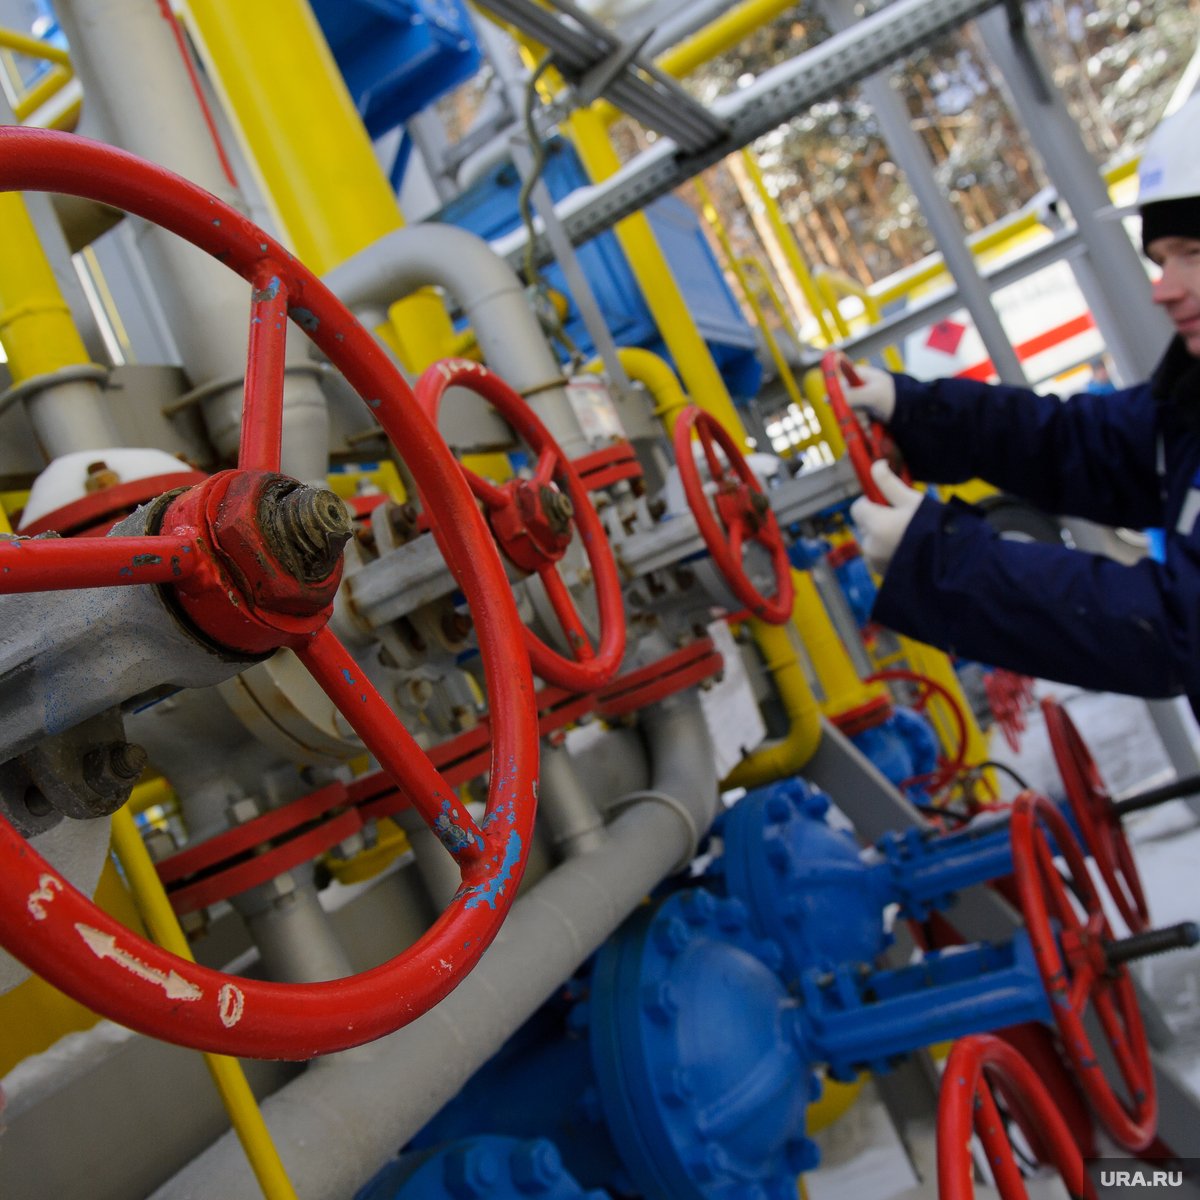 Україна не відкриє транзит газу через ГВС «Сохранівка» до відновлення контролю над системою трубопроводів, - Reuters